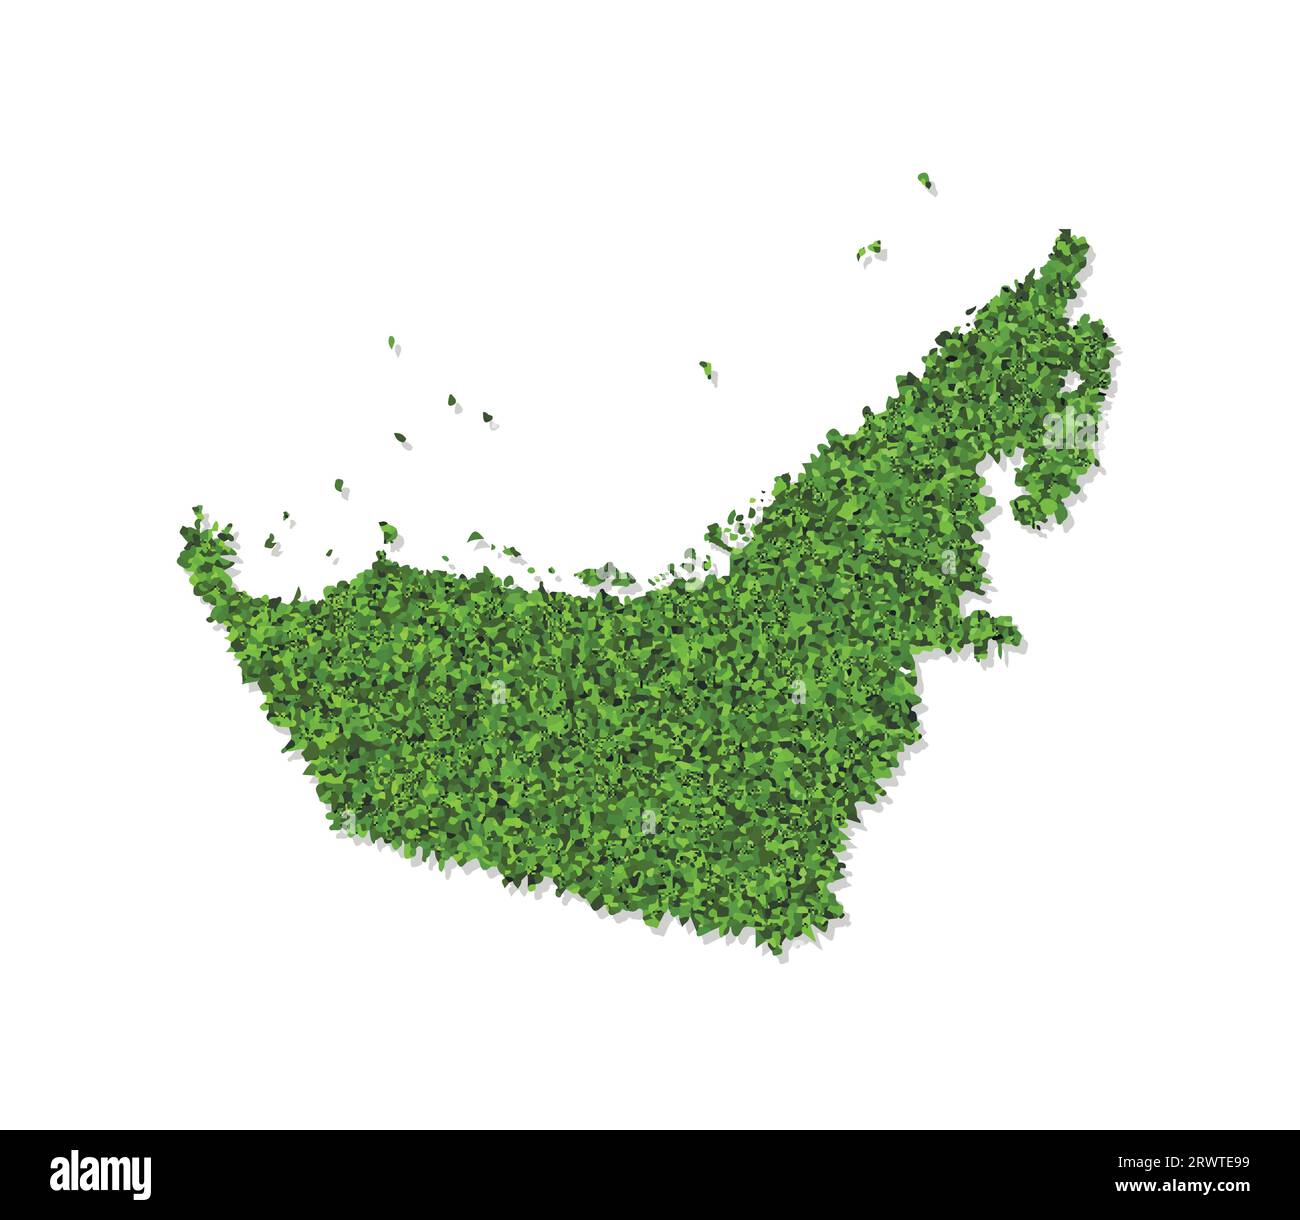 Vektor isolierte vereinfachte Illustration Symbol mit grüner grasbewachsener Silhouette der Karte der Vereinigten Arabischen Emirate (VAE). Weißer Hintergrund Stock Vektor